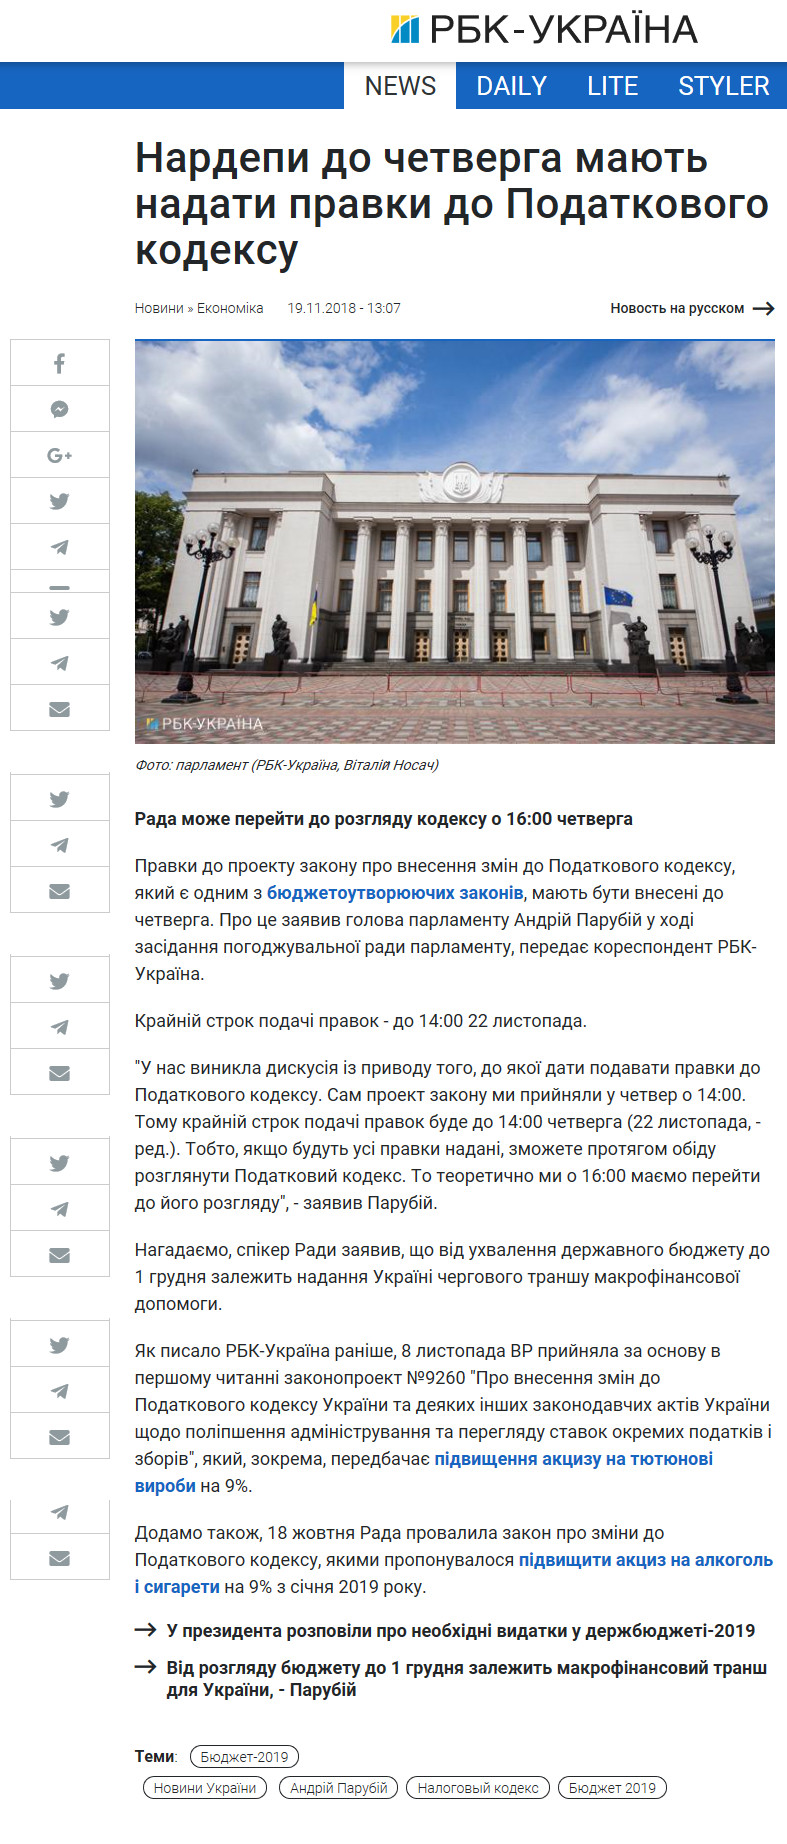 https://www.rbc.ua/ukr/news/nardepy-chetverga-dolzhny-predostavit-pravki-1542625623.html